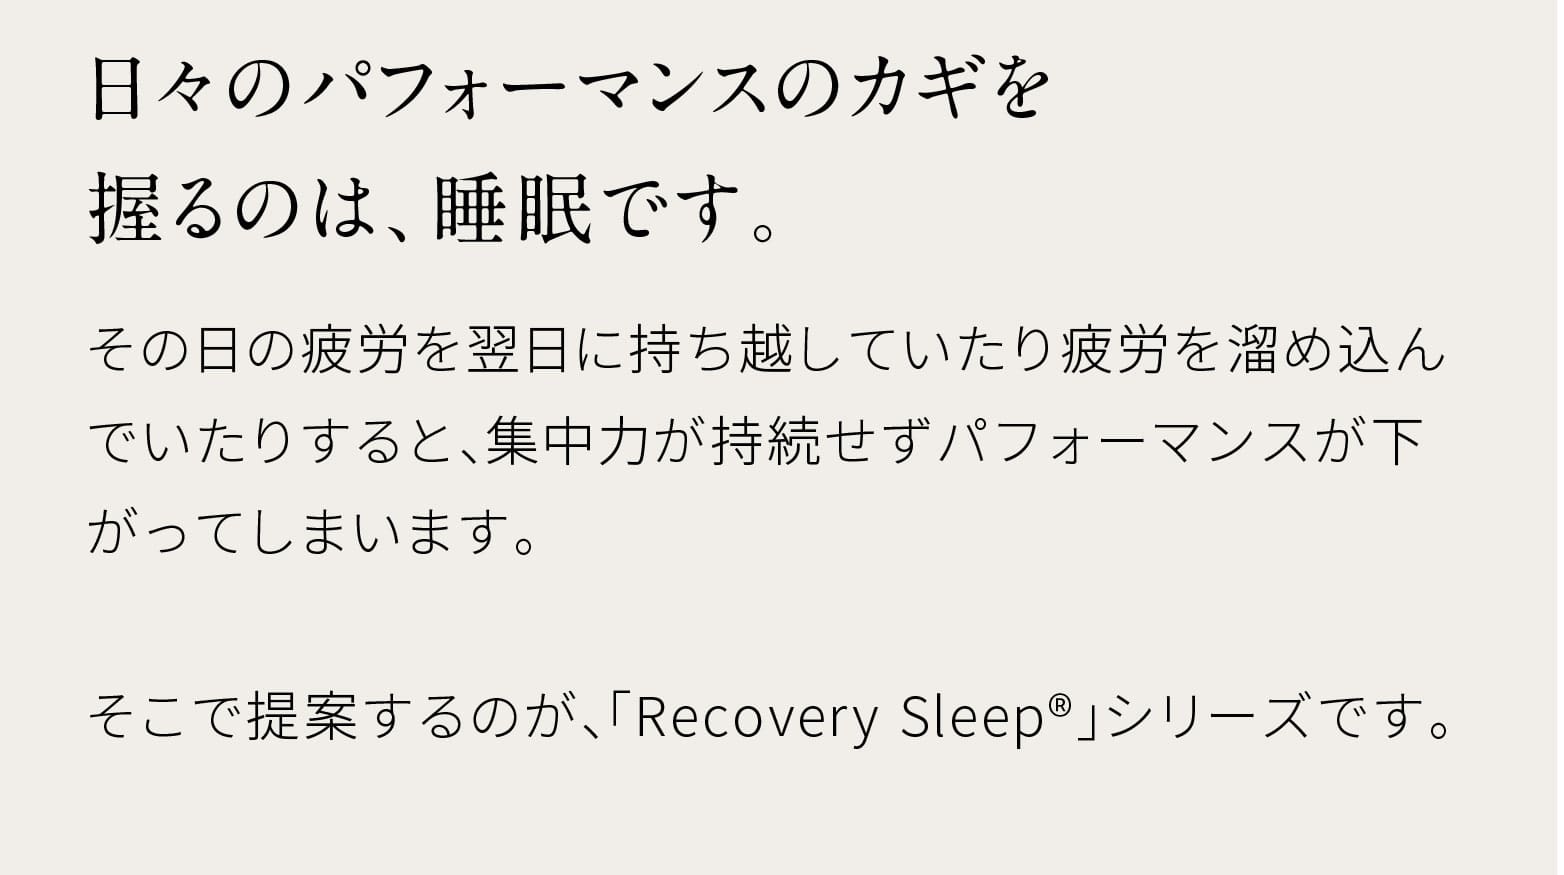 日々のパフォーマンスのカギを握るのは、睡眠です。その日の疲労を翌日に持ち越していたり疲労を溜め込んでいたりすると、集中力が持続せずパフォーマンスが下がってしまいます。そこで提案するのが、「Recovery Sleep®」シリーズです。